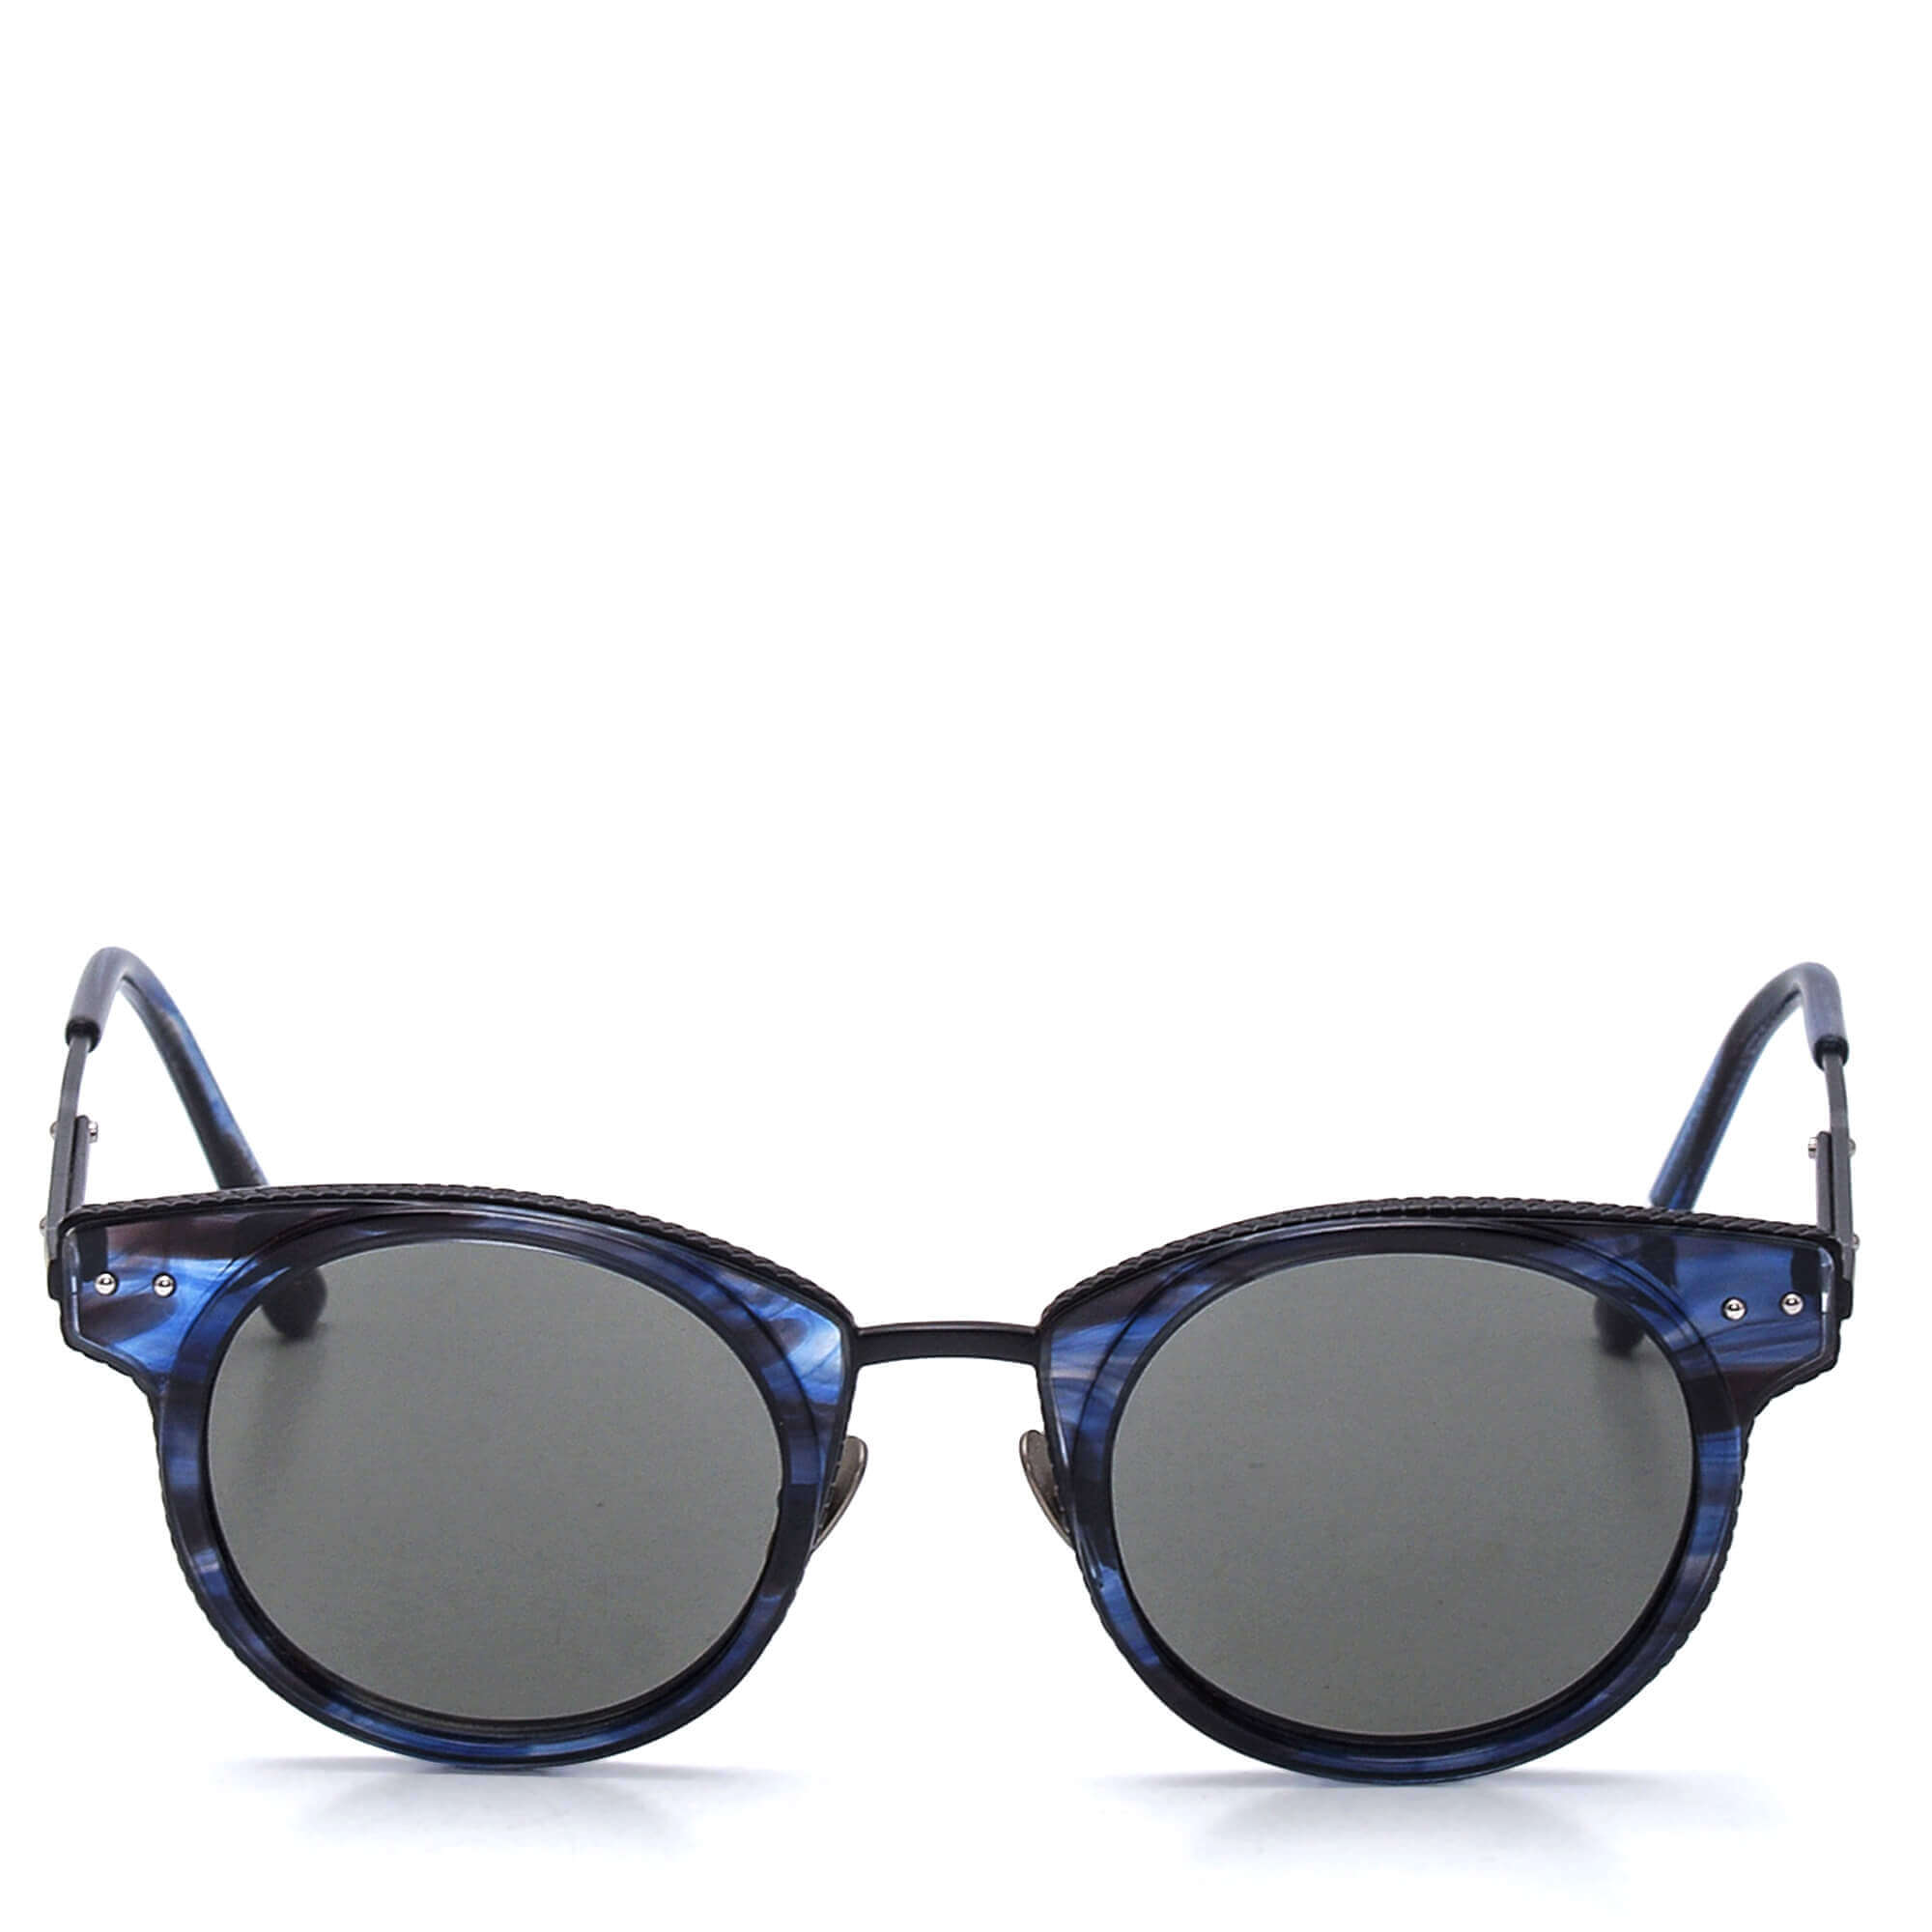 Bottega Veneta - Black & Blue Round Sunglasses